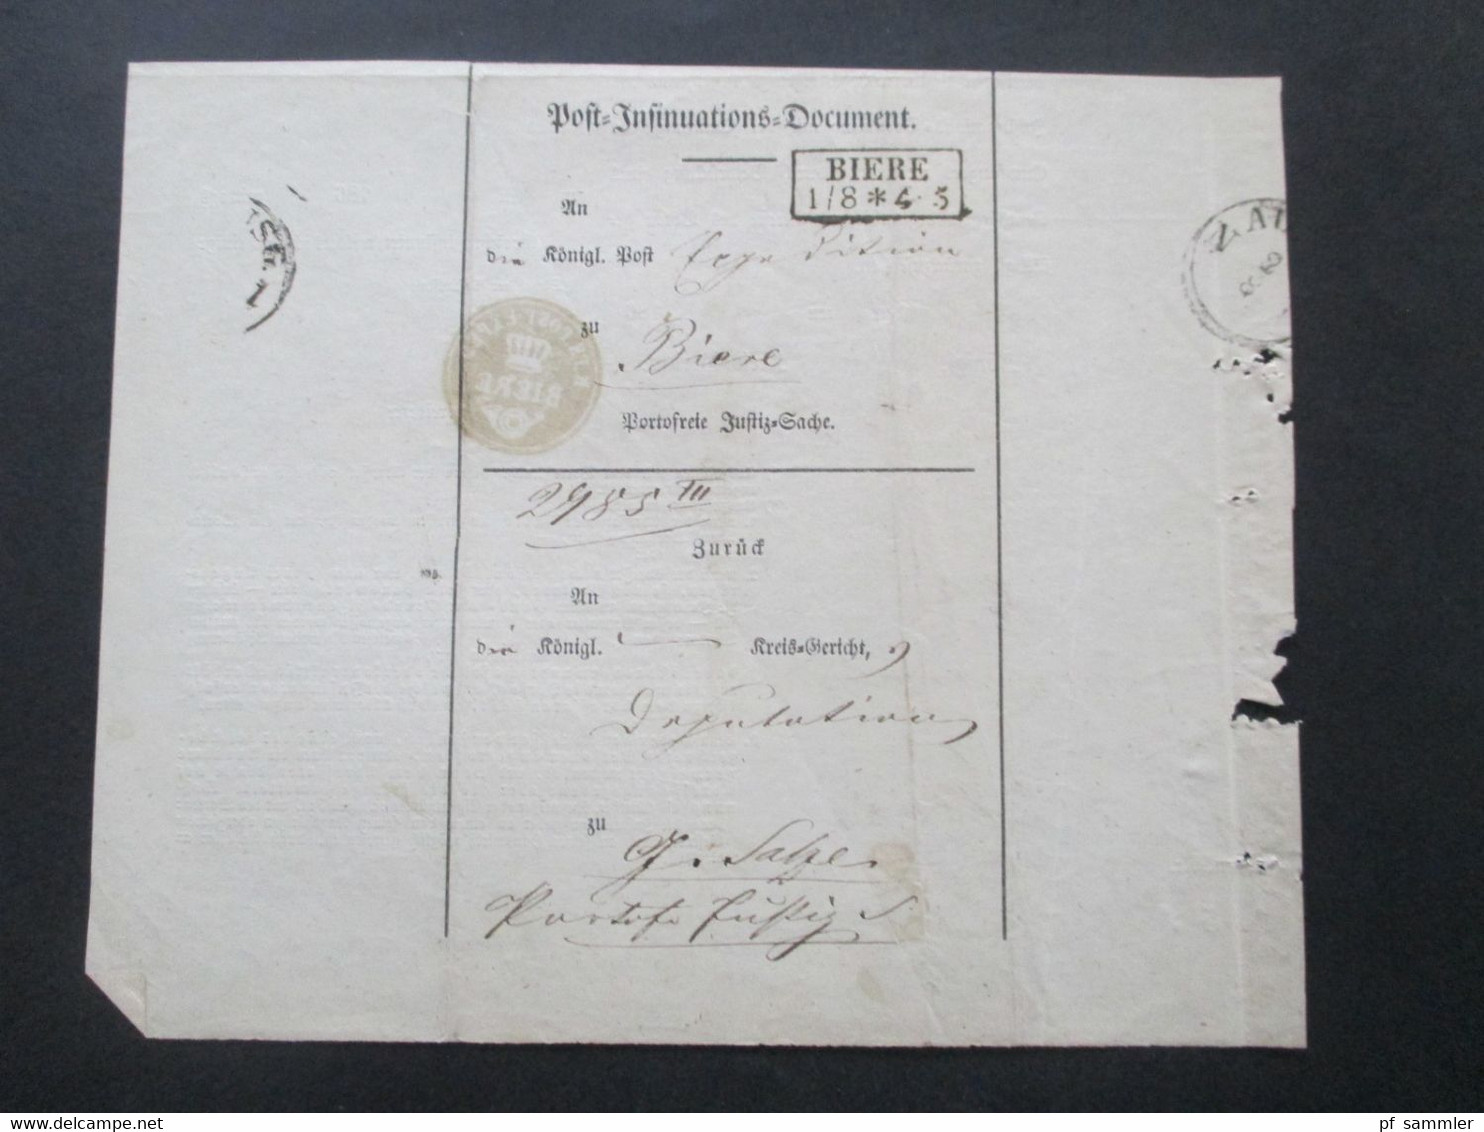 Altdeutschland Sachsen 1.8.1862 Beleg / Post Behändigungsschein Portofreie Justizsache Stp. K. Pr. Post Exped. Biere - Sachsen